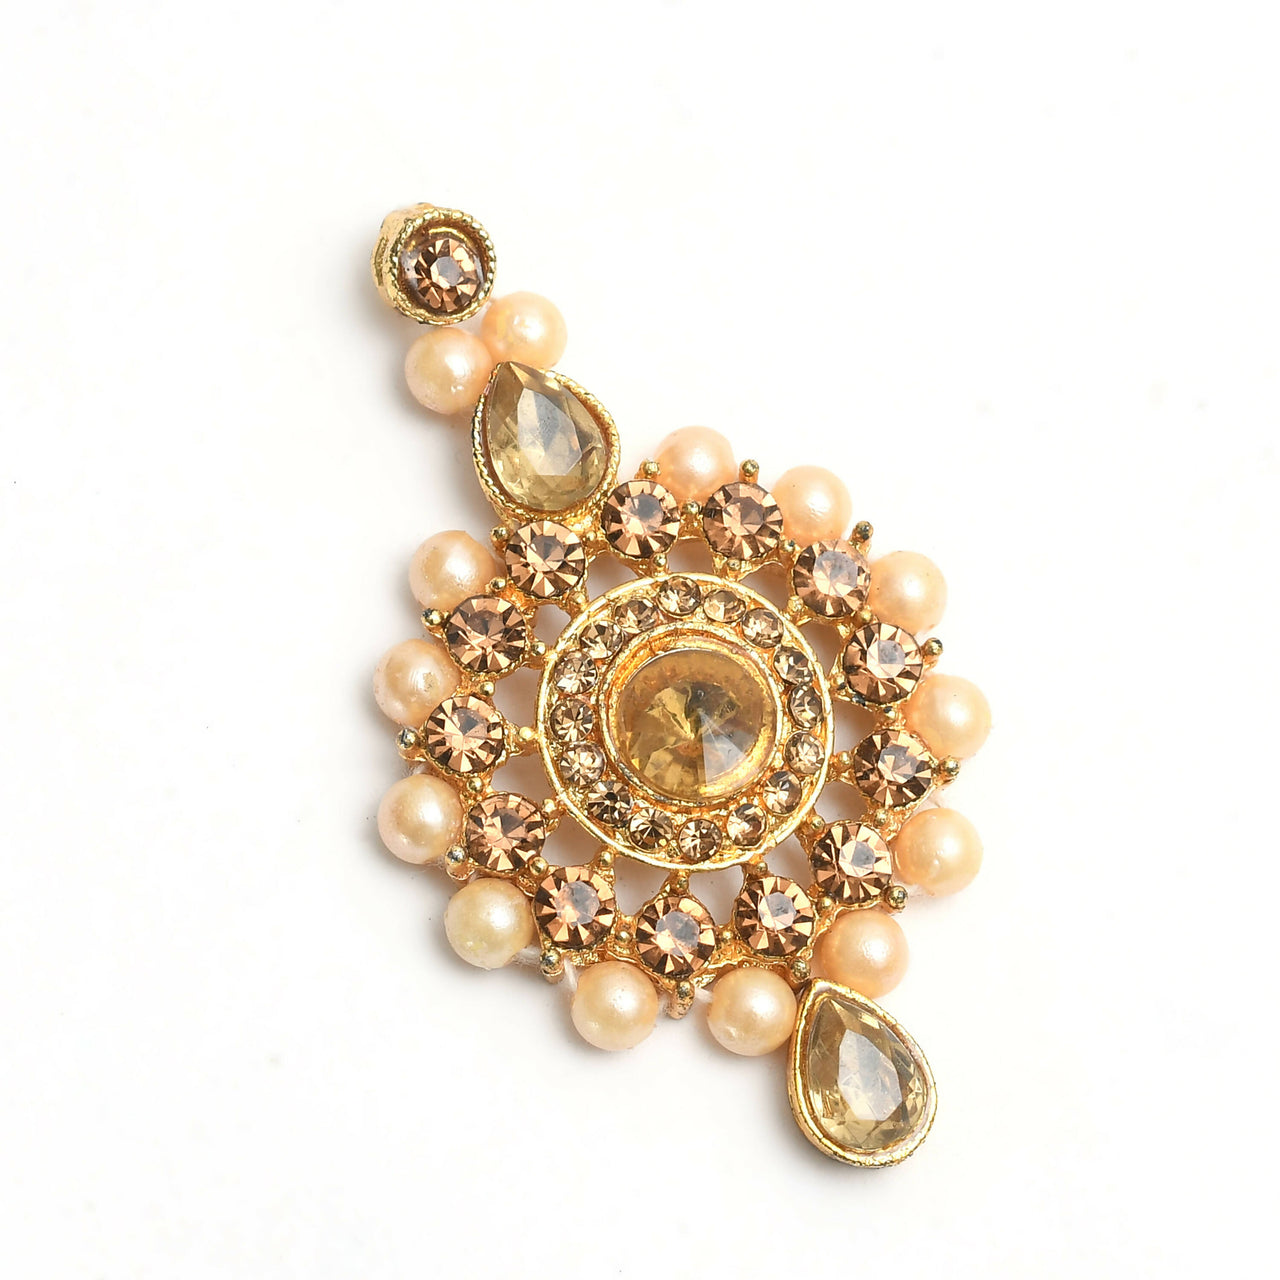 Mominos Fashion Johar Kamal Gold-Plated Brass Finish Kundan/Stone Choker For Women (Golden) - Distacart